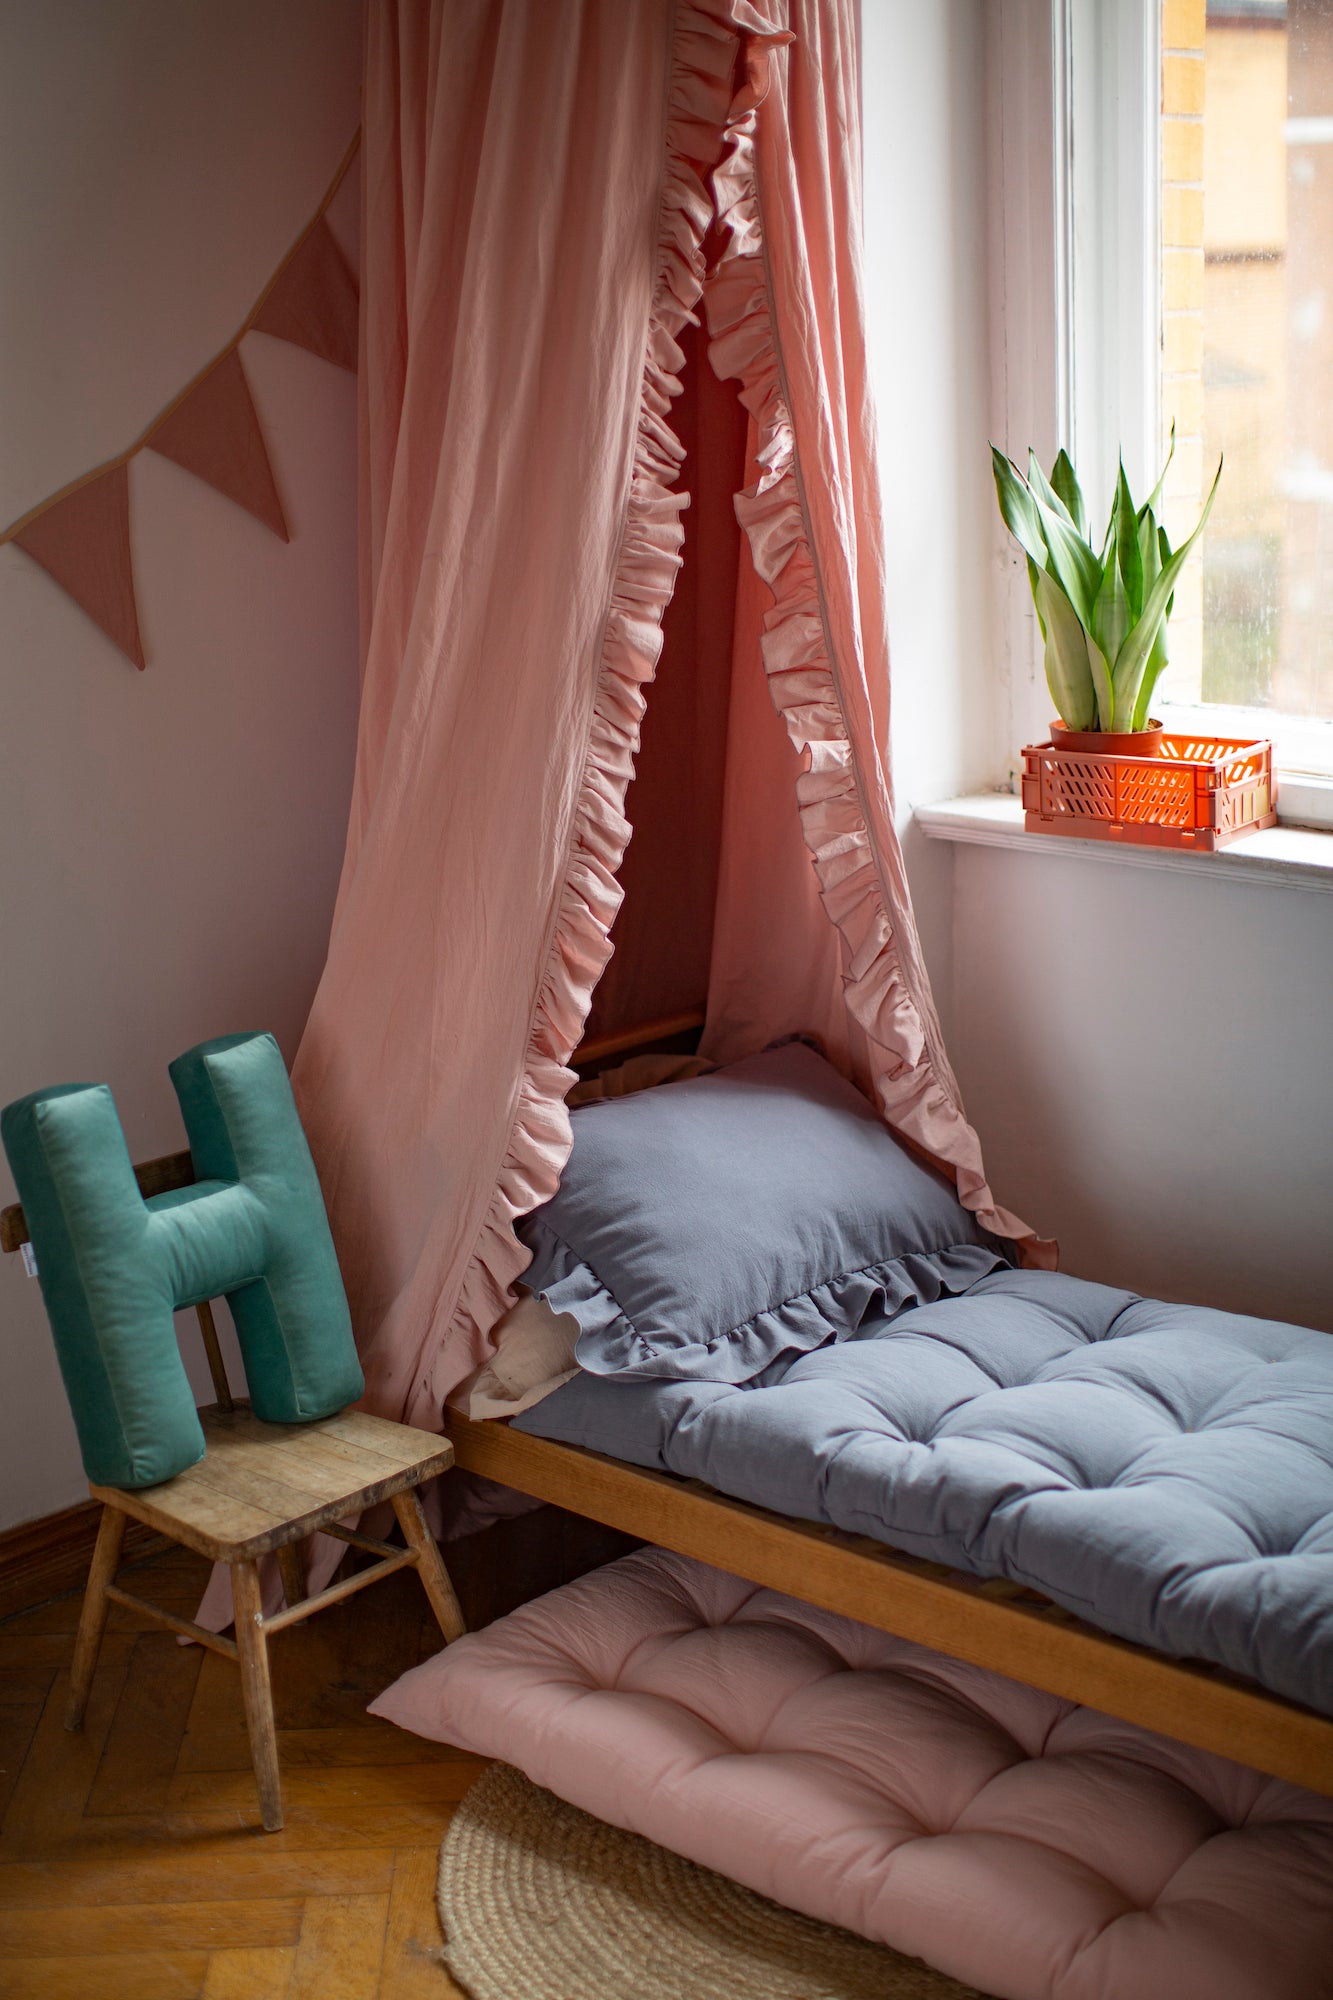 poduszka literka welurowa h miętowa stojąca obok łóżka dziecięcego nad którym wisi baldachim od Bettys Home